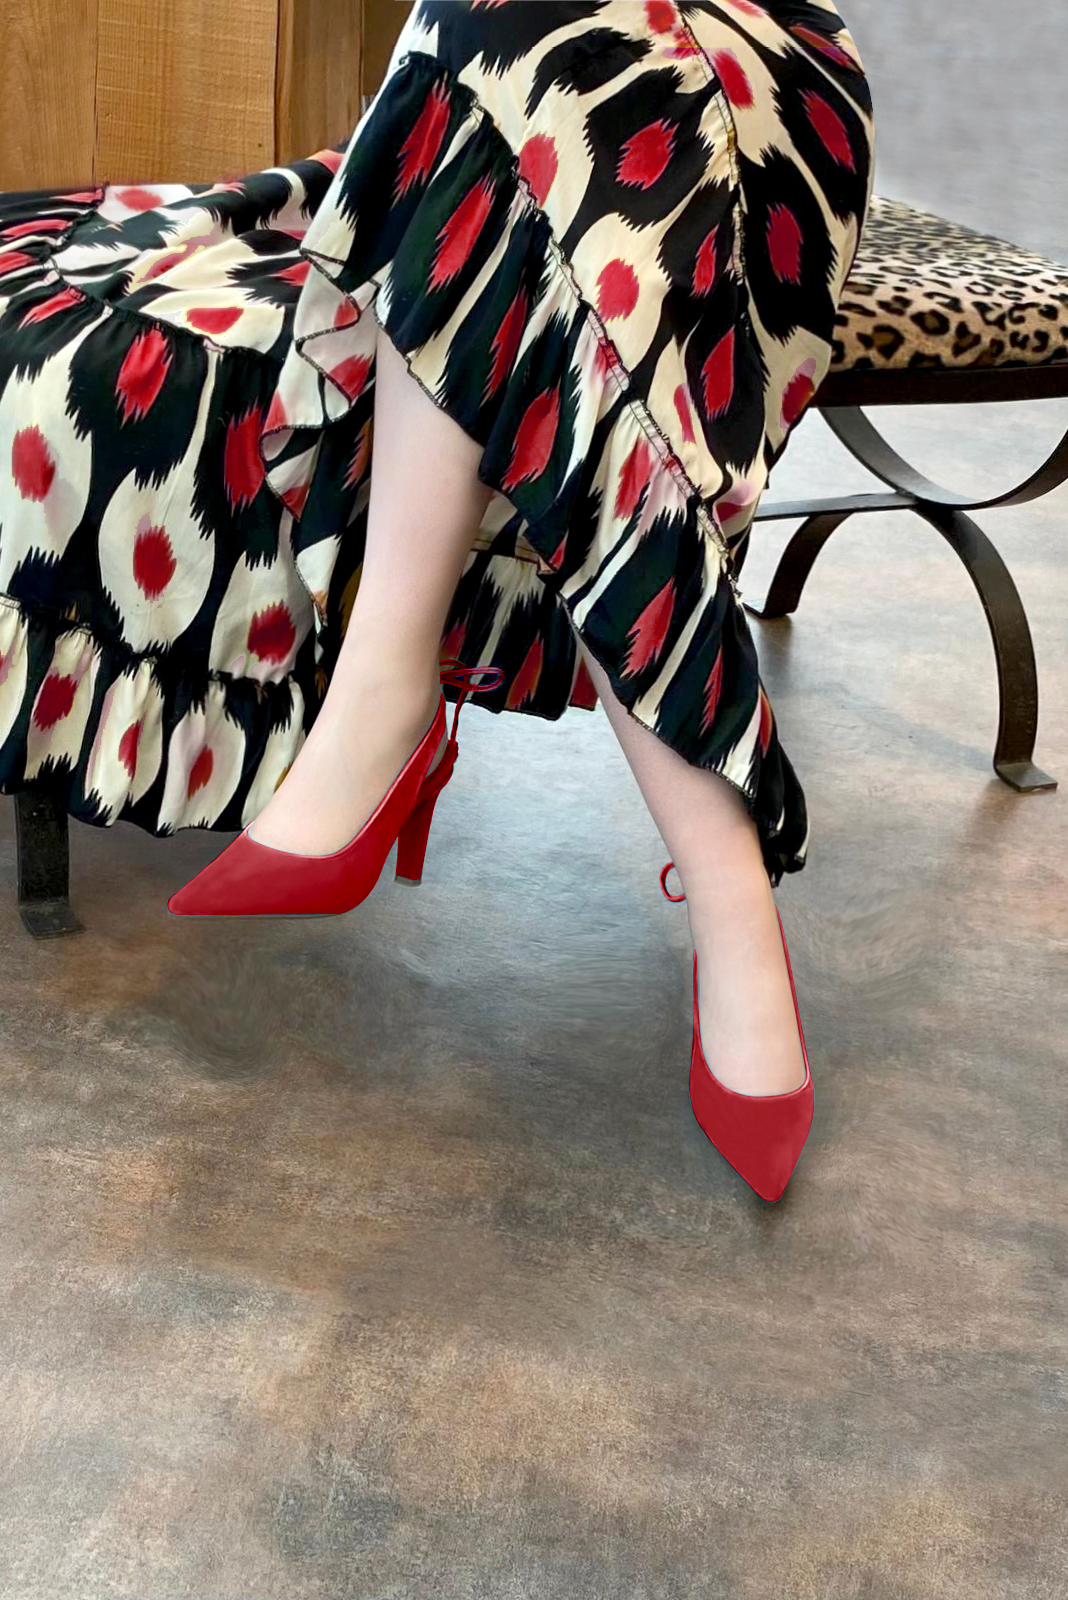 Chaussure femme à brides :  couleur rouge carmin. Bout pointu. Talon haut fin. Vue porté - Florence KOOIJMAN